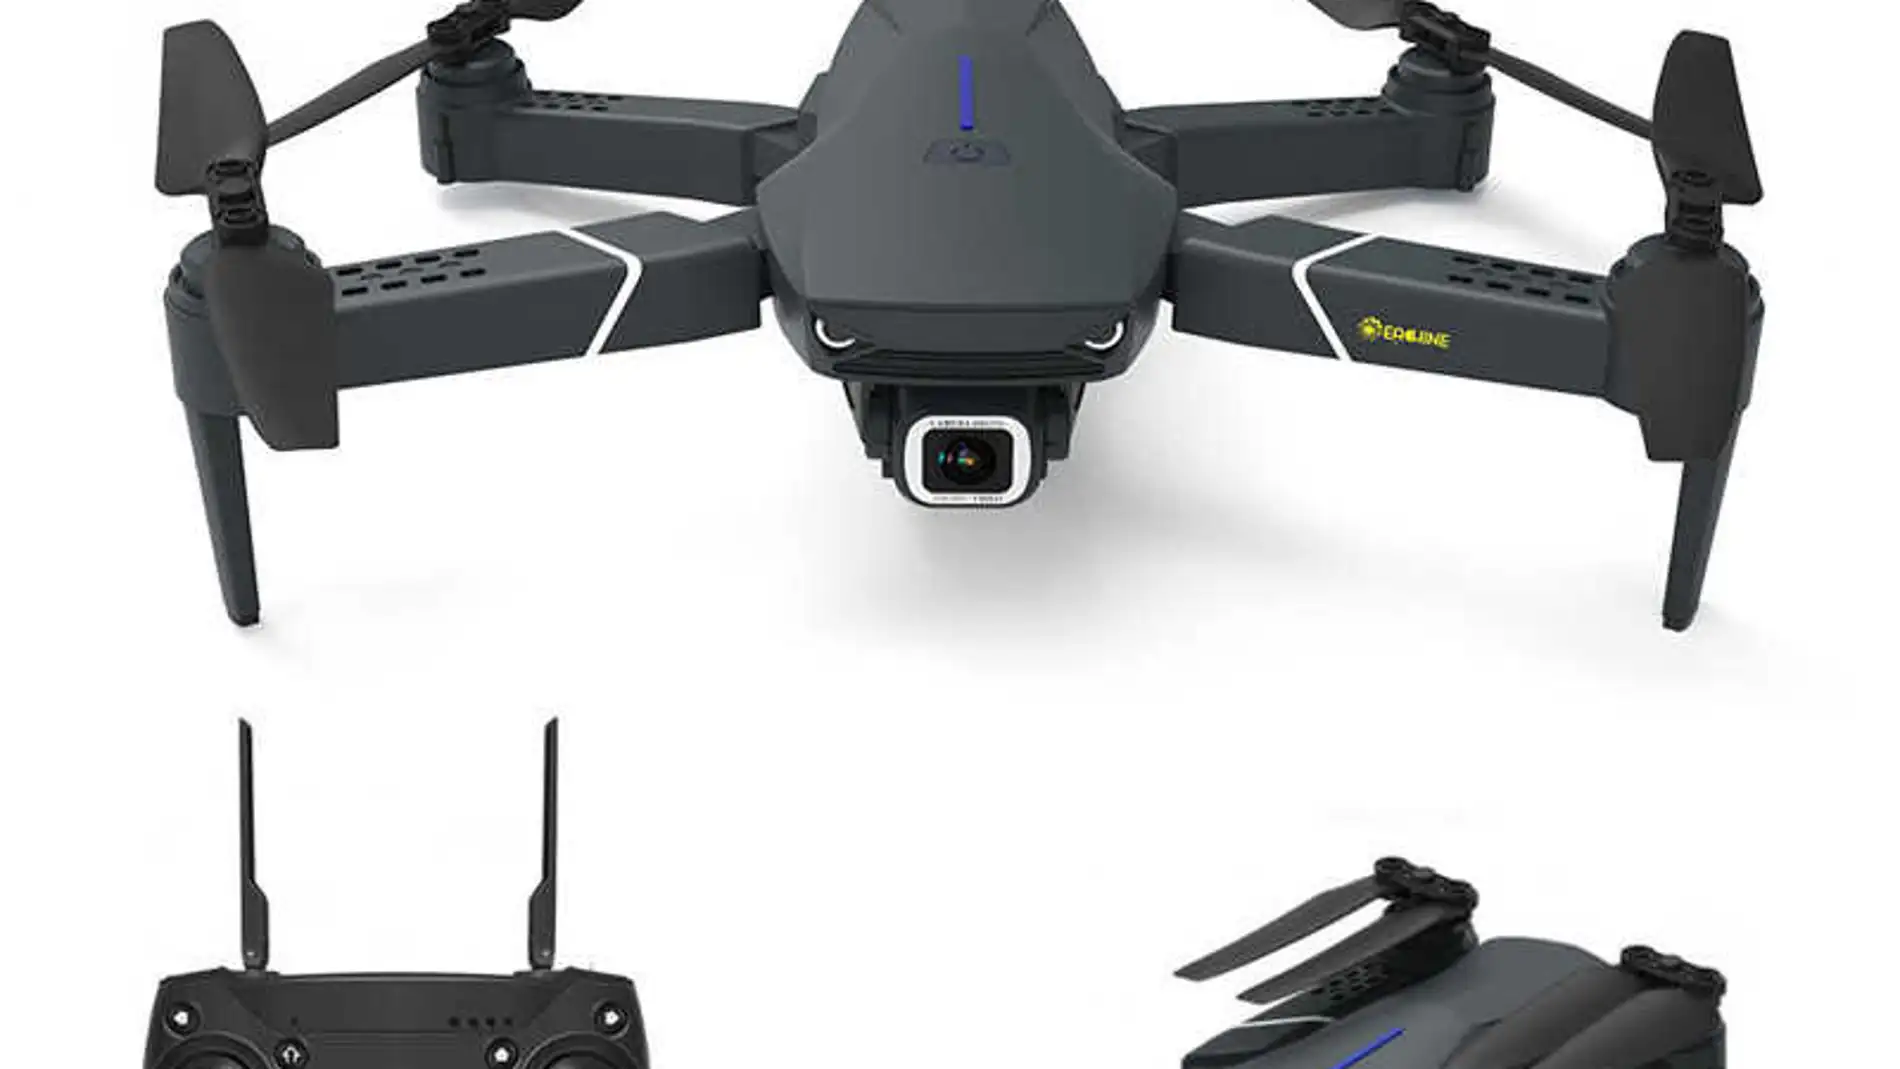 Dron Con Cámara - Fotografía Aérea De Alta Calidad con Ofertas en